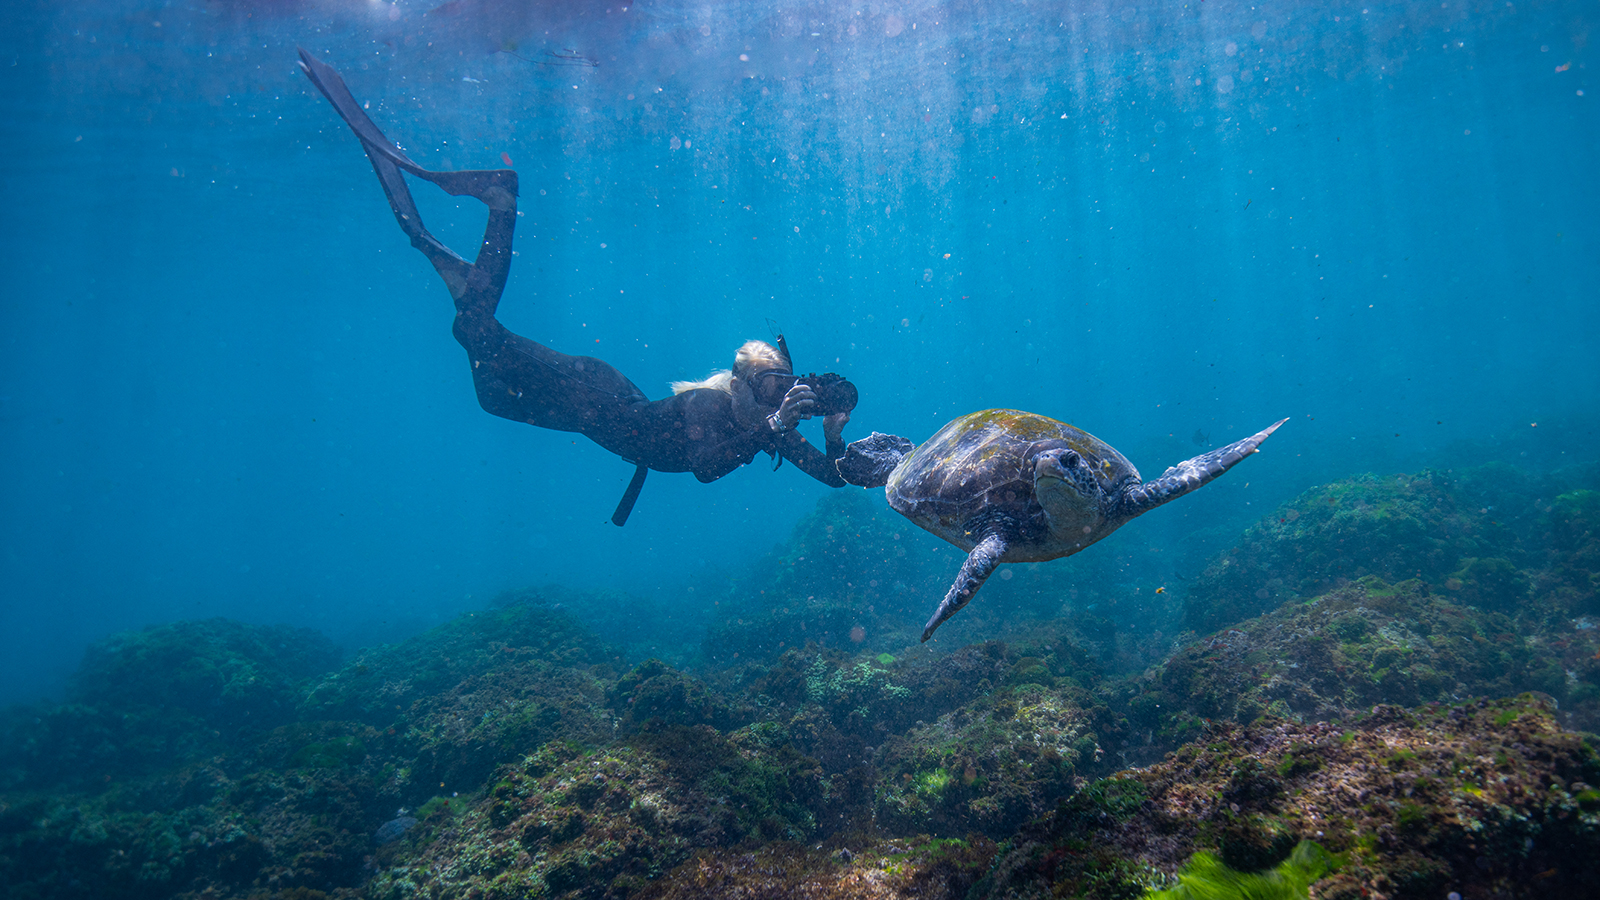 Jemma snorkling alongside a turtle underwater